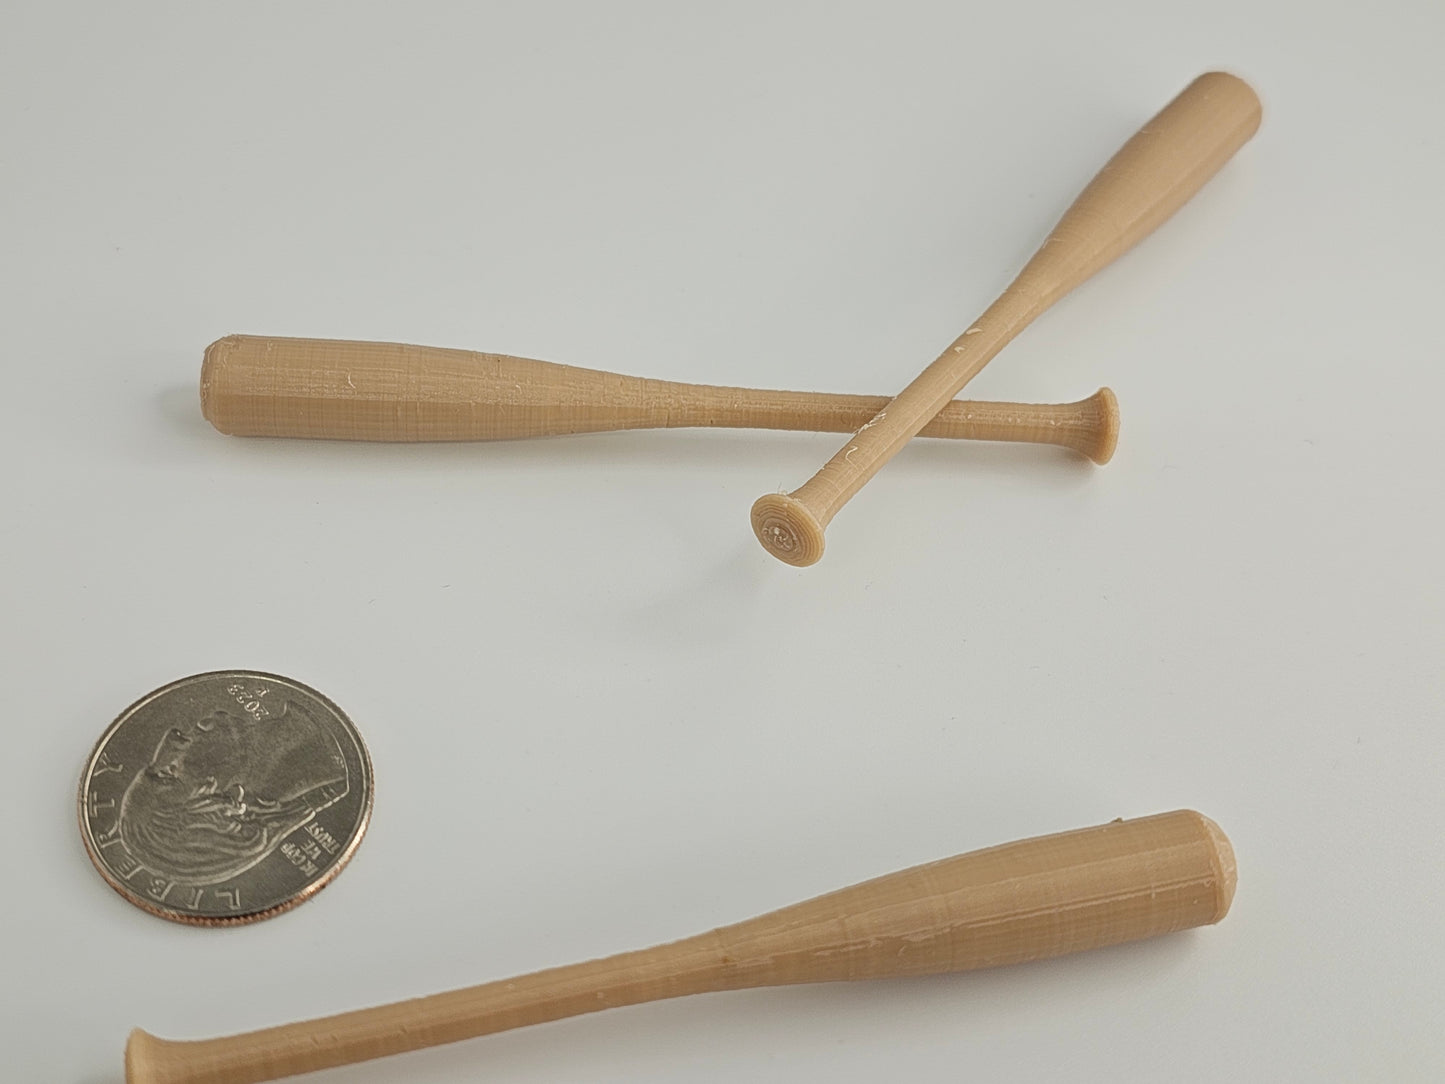 Mini Baseball Bat